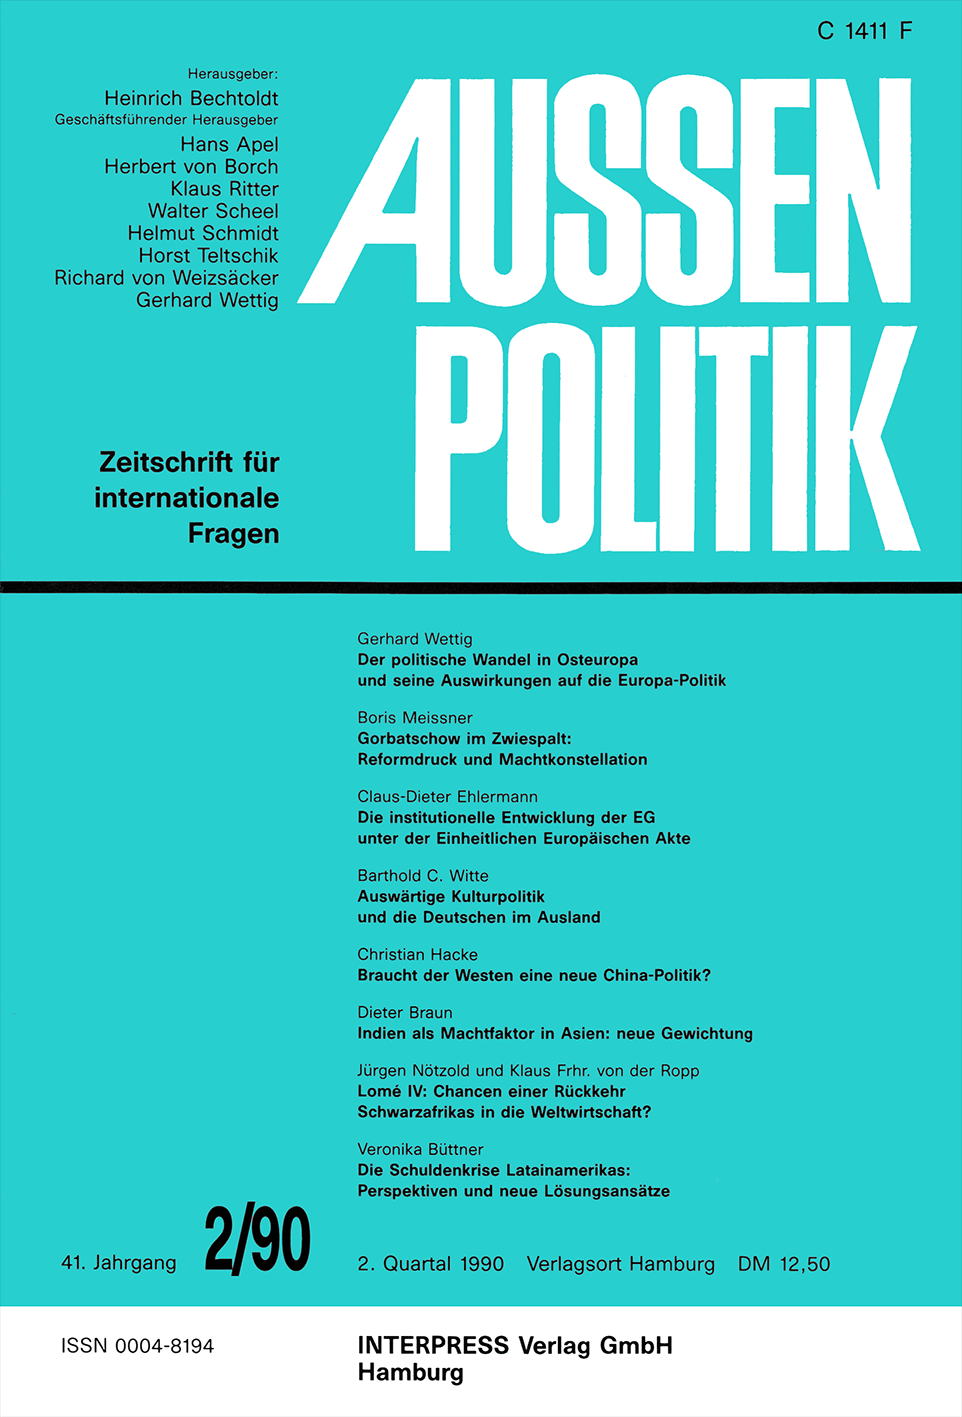 Aussenpolitik, issue 2/90, vol. 41, no. 2, 1990, p. 182-193;